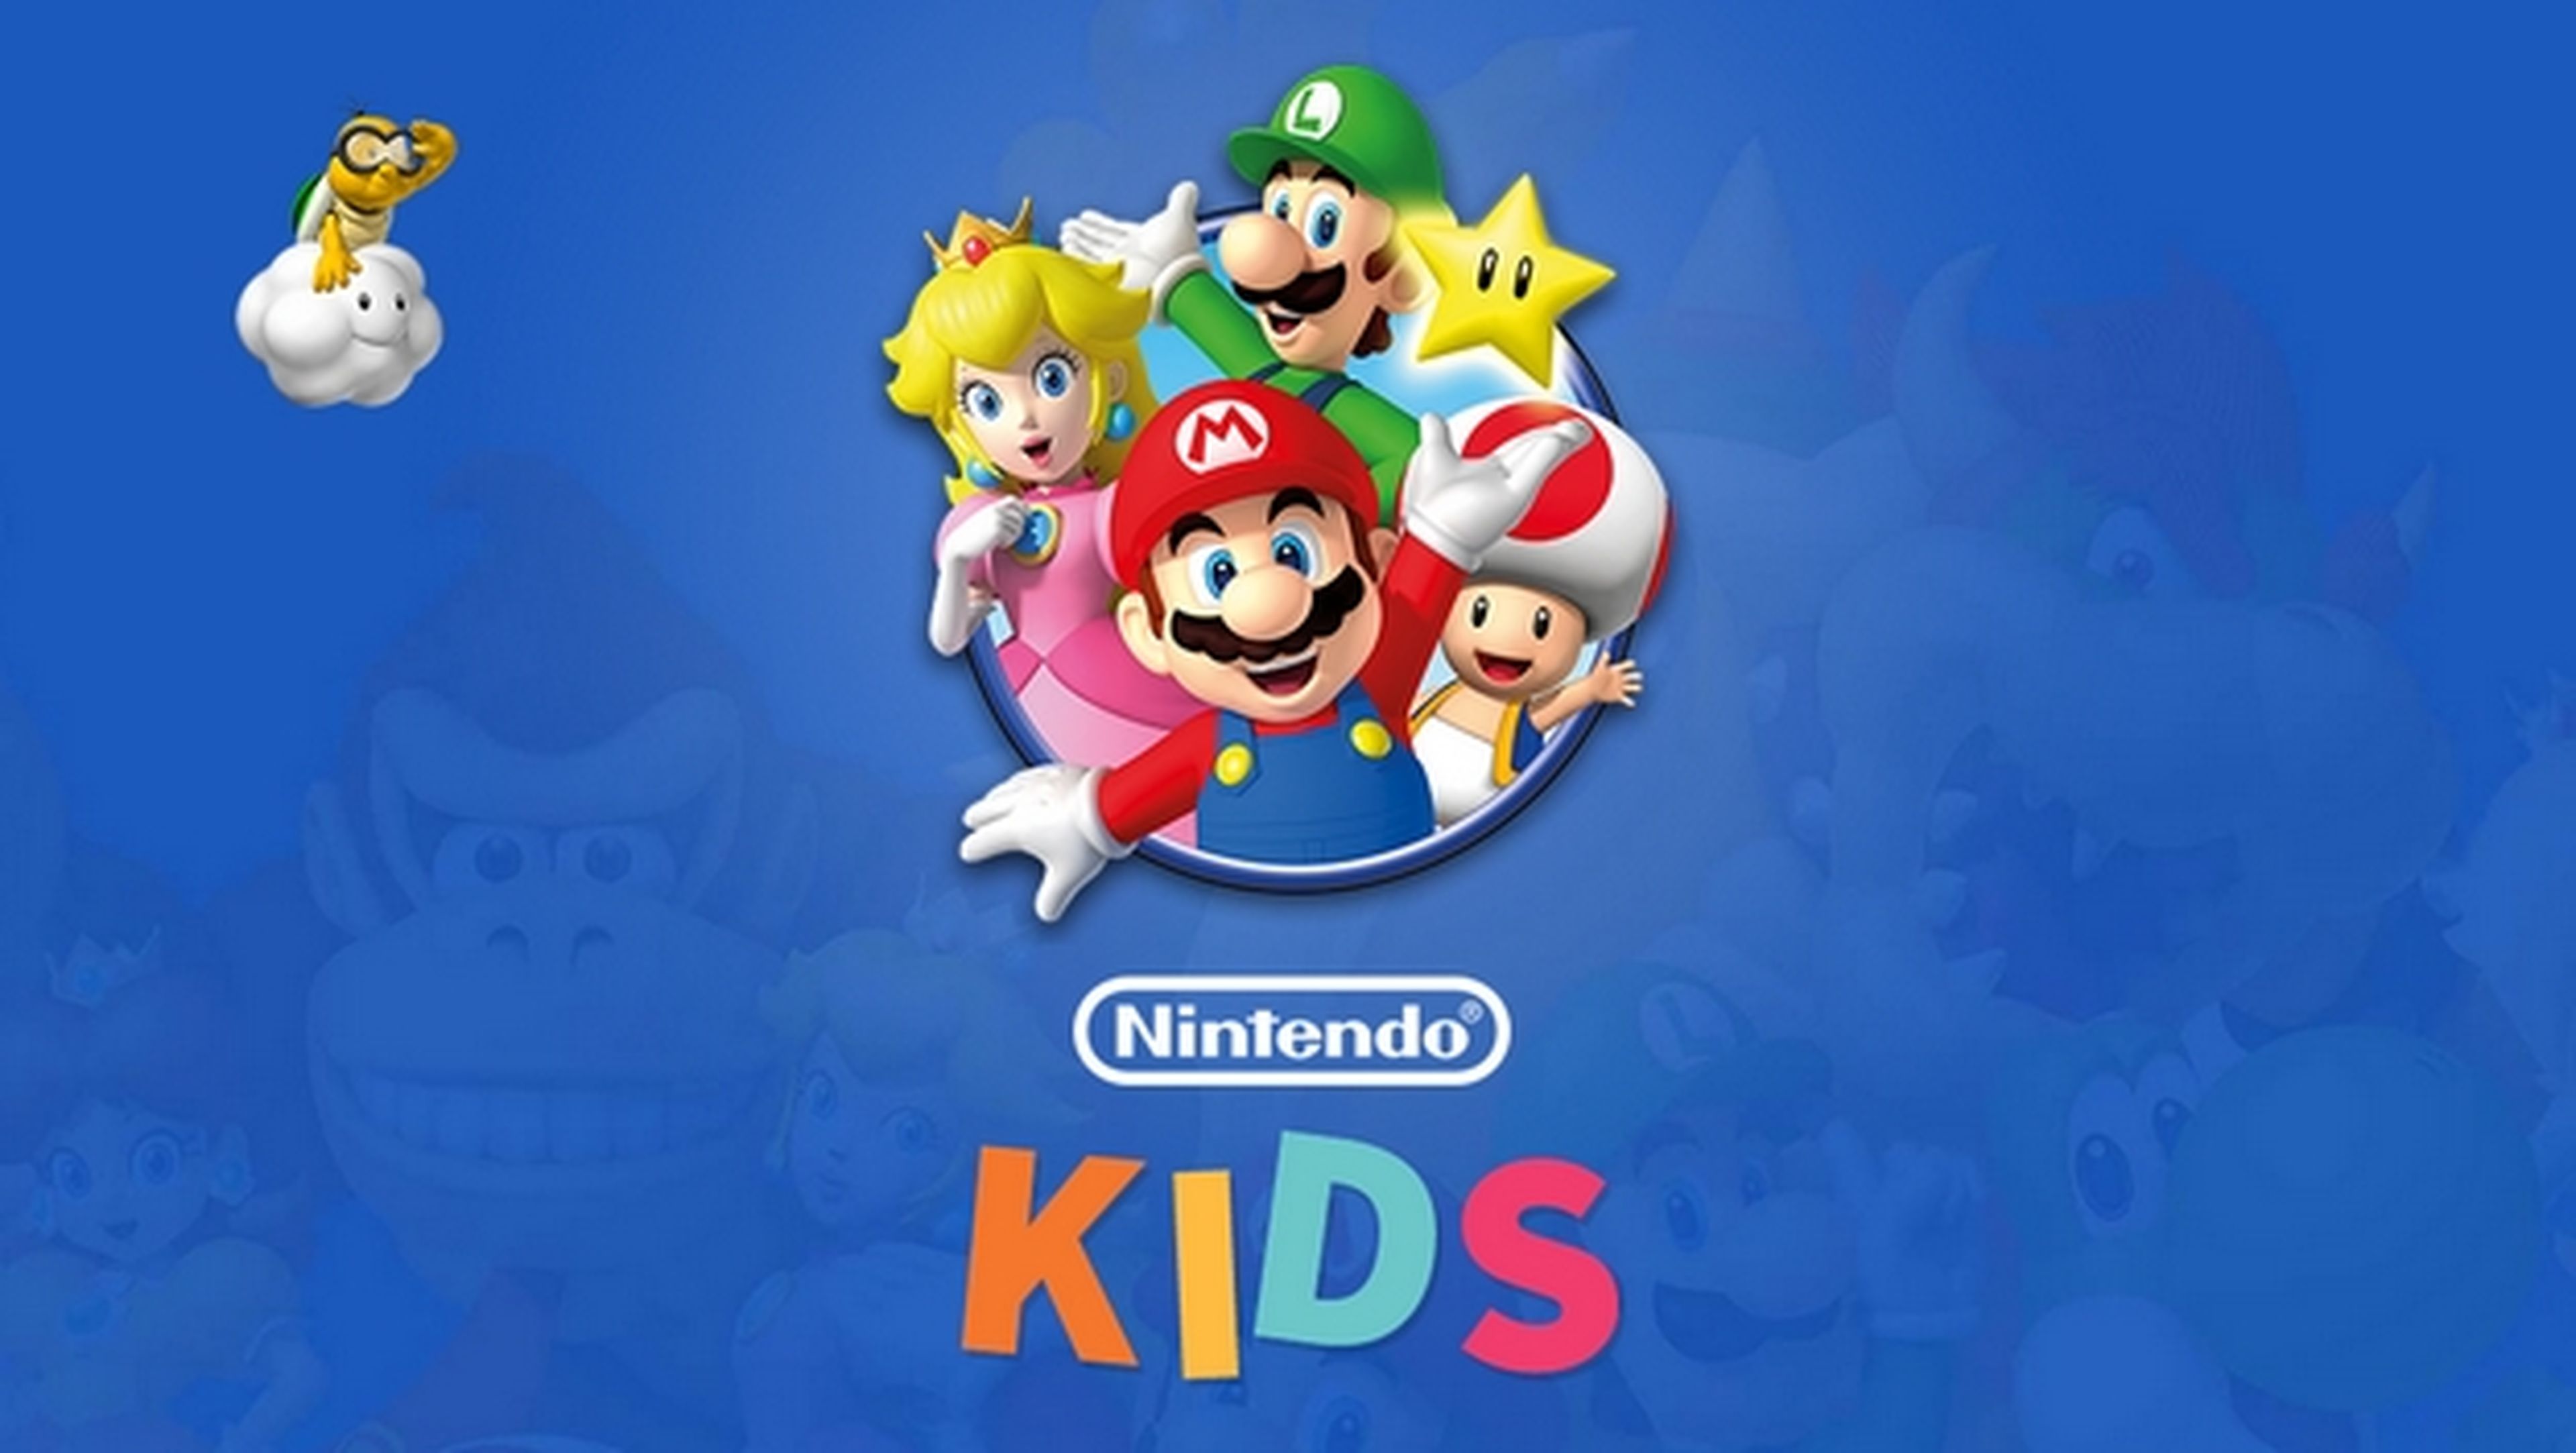 Nintendo Kids, nueva web con actividades, juegos y vídeos para niños